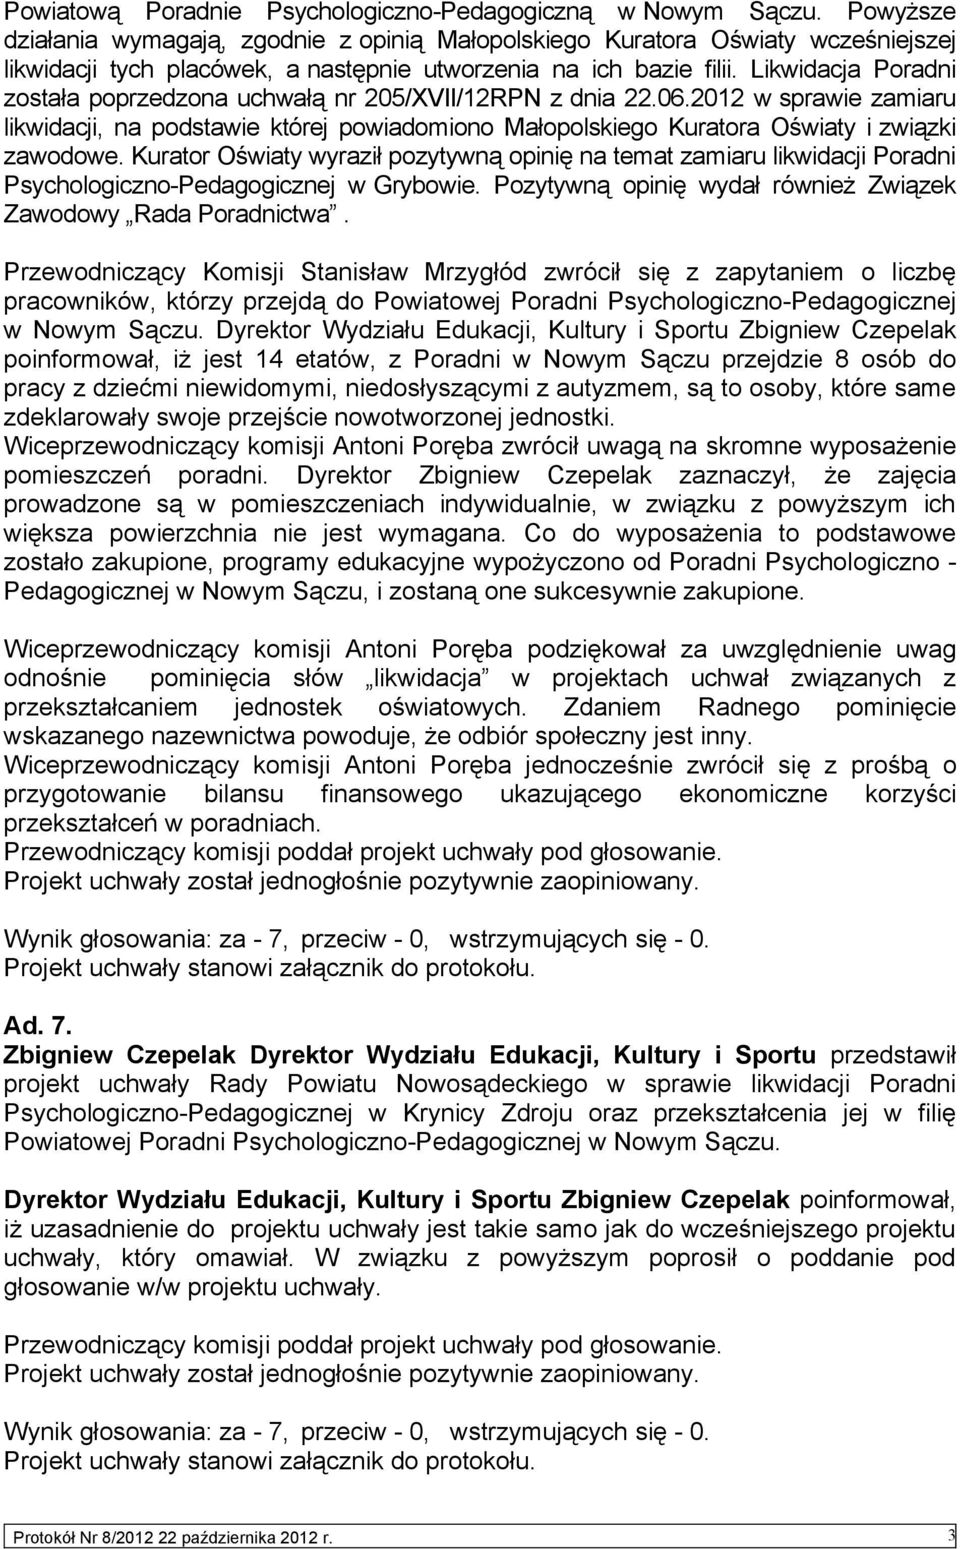 Likwidacja Poradni została poprzedzona uchwałą nr 205/XVII/12RPN z dnia 22.06.2012 w sprawie zamiaru likwidacji, na podstawie której powiadomiono Małopolskiego Kuratora Oświaty i związki zawodowe.